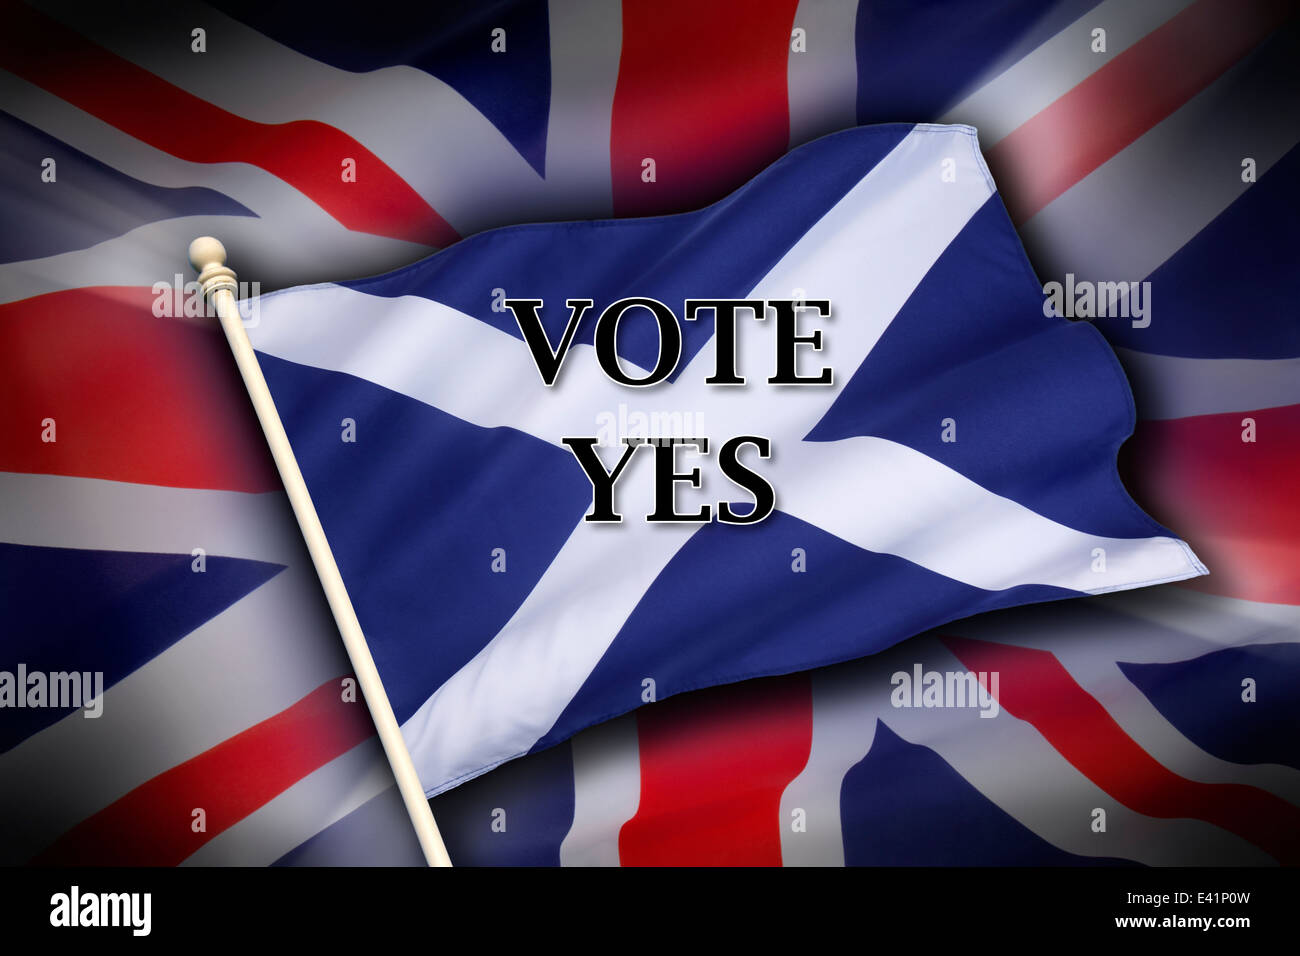 Le pavillon du Royaume-Uni (l'Union Flag) et le drapeau de l'Écosse - l'indépendance écossaise - Vote Oui Banque D'Images